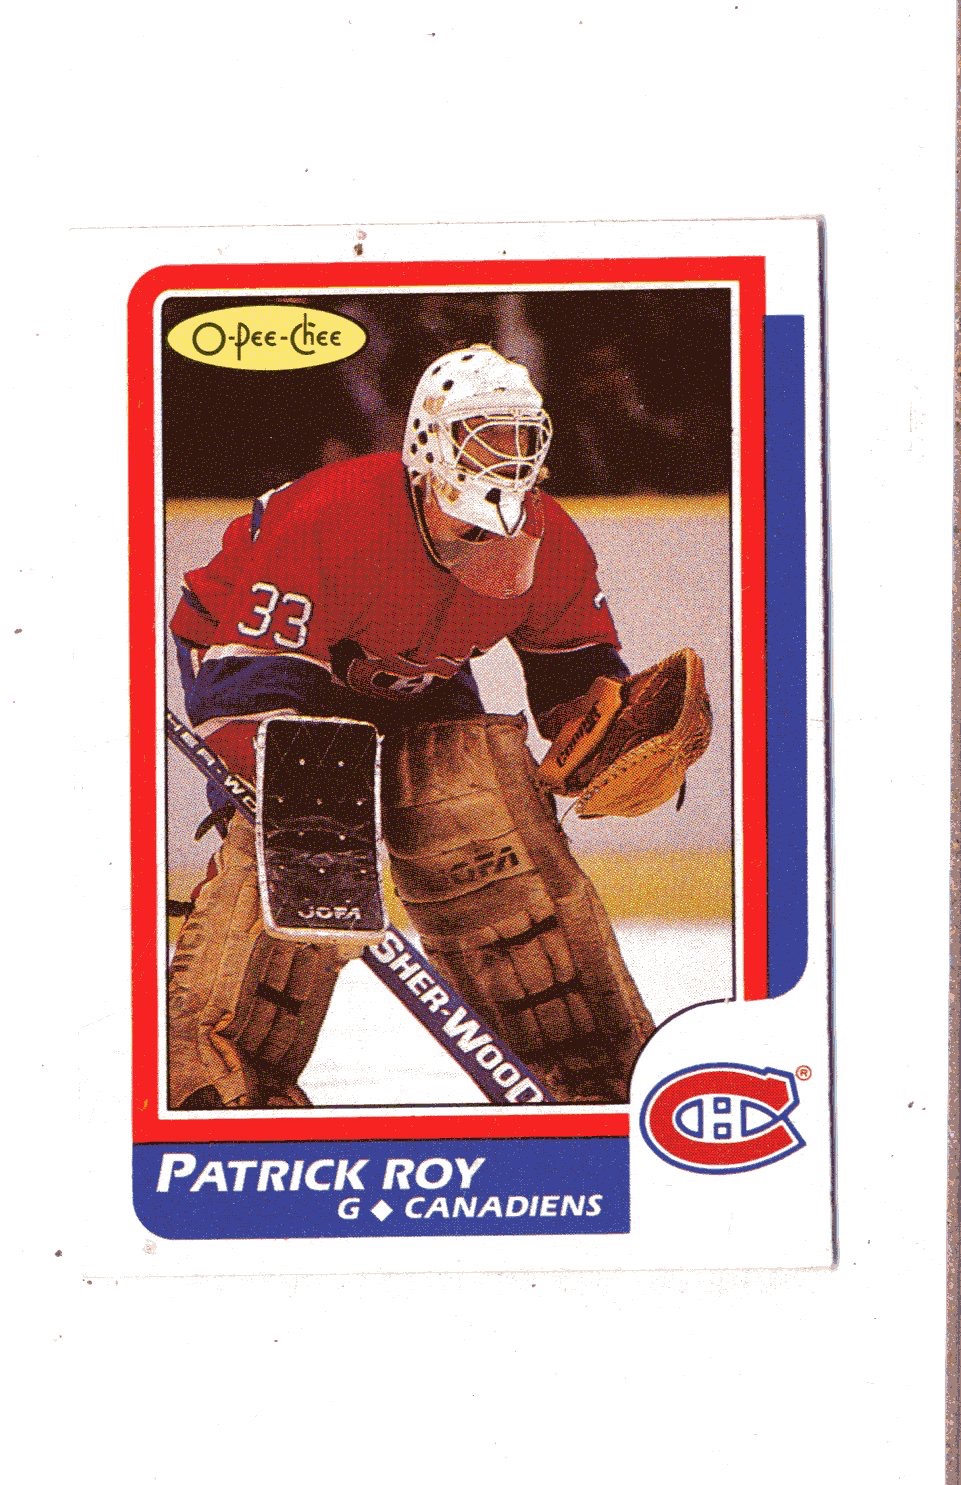 O.p.c. Hockey Trading Cards - 21382